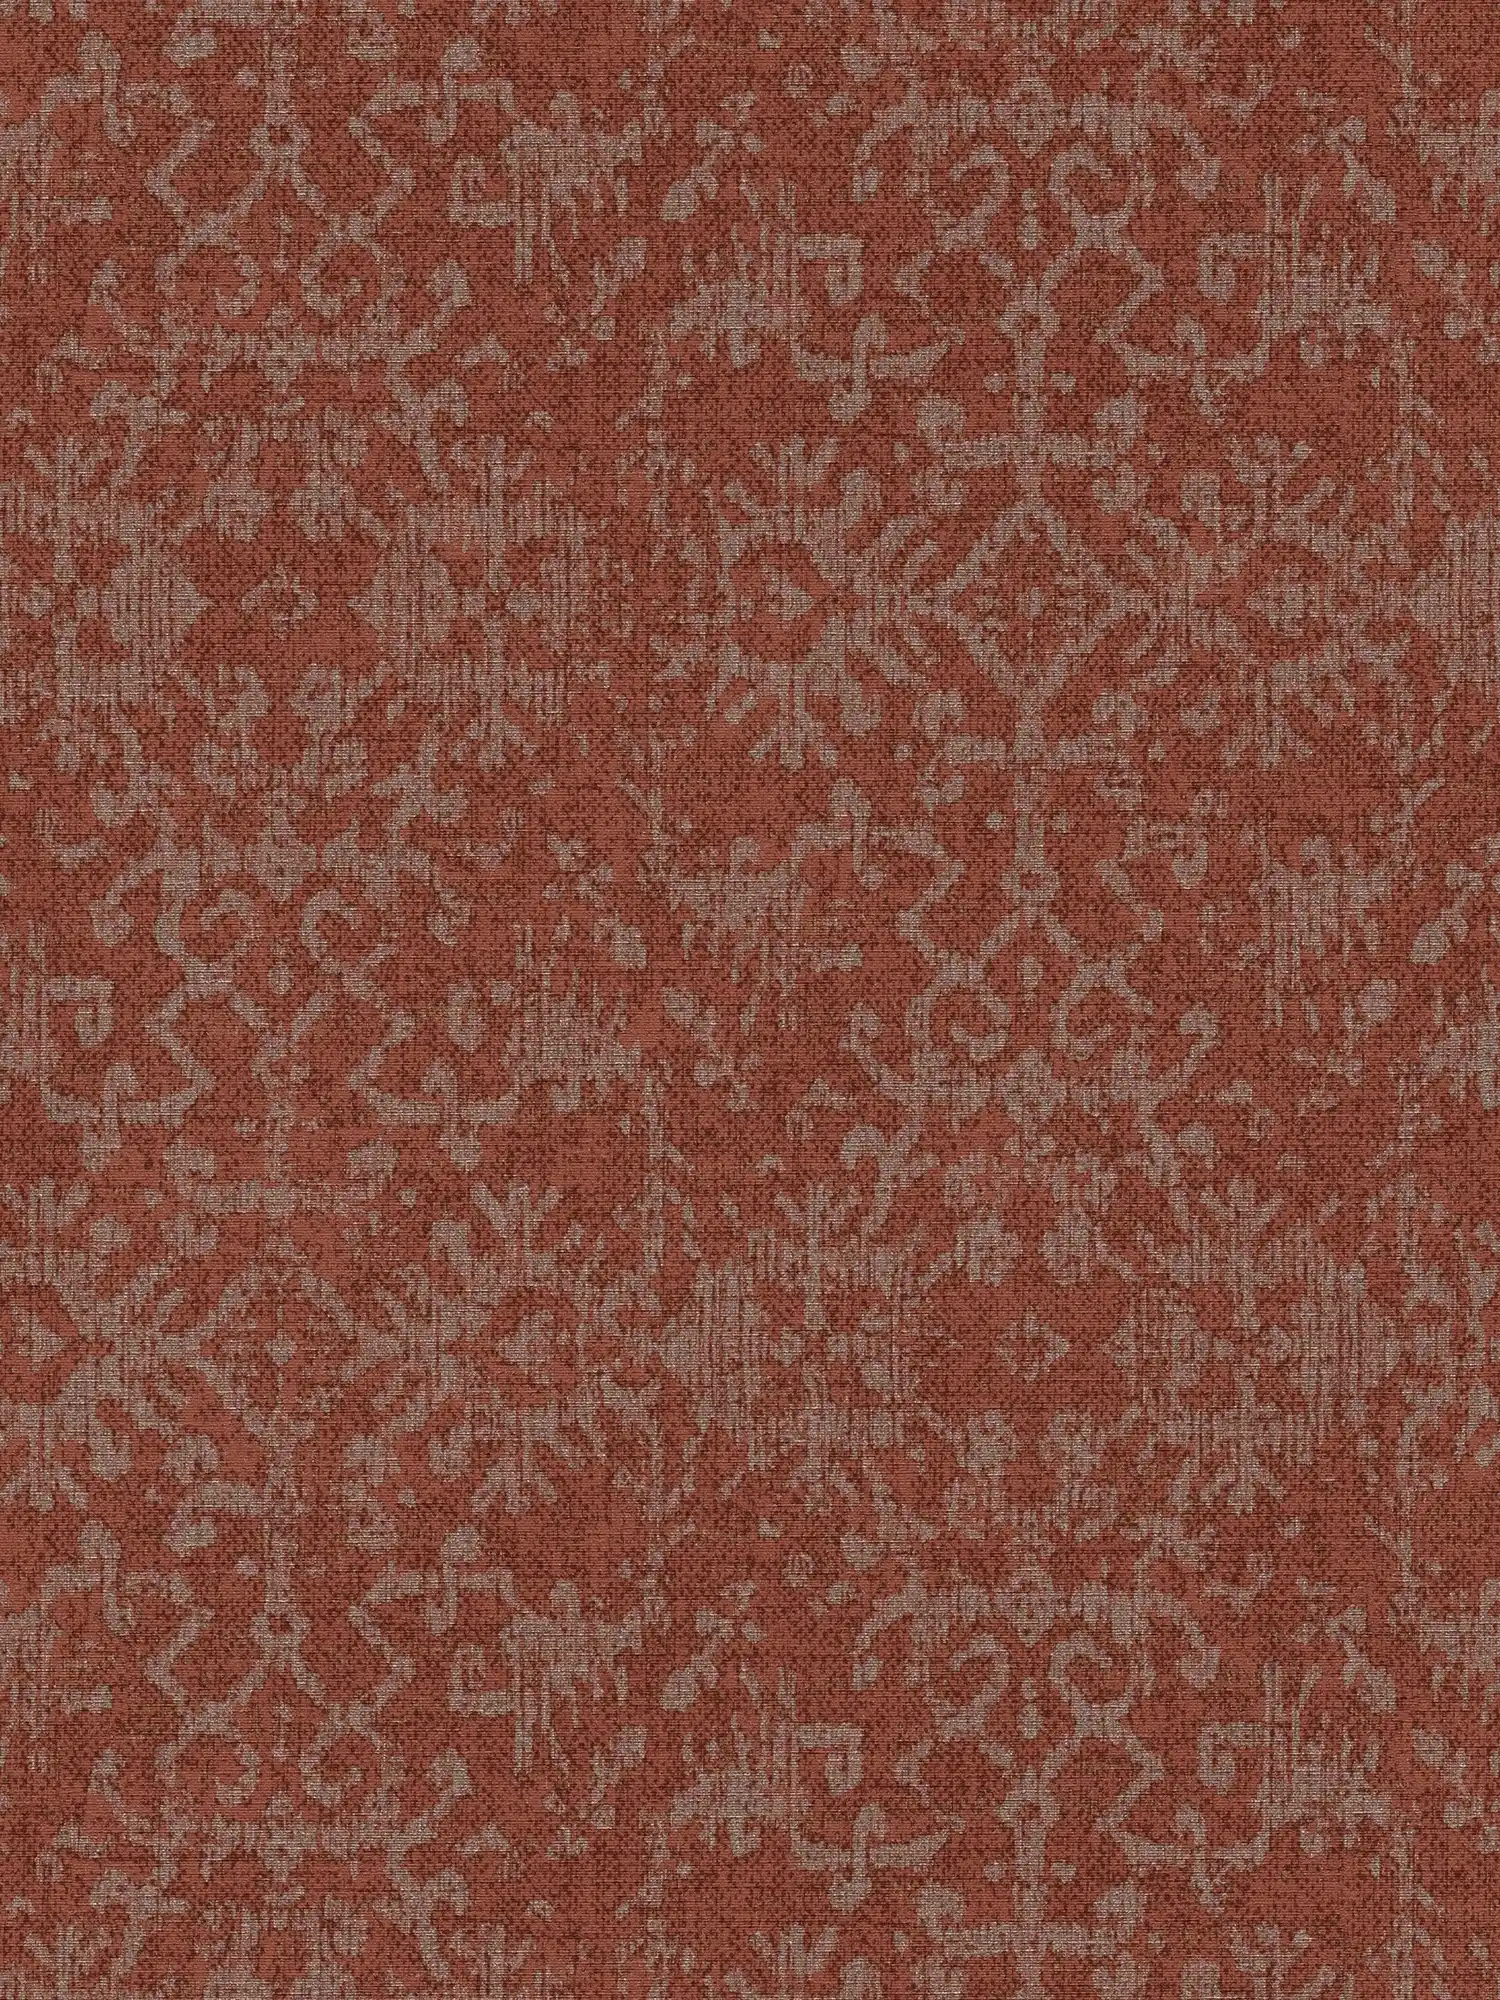 Tapete Ornament-Design im persischen Teppich-Look
